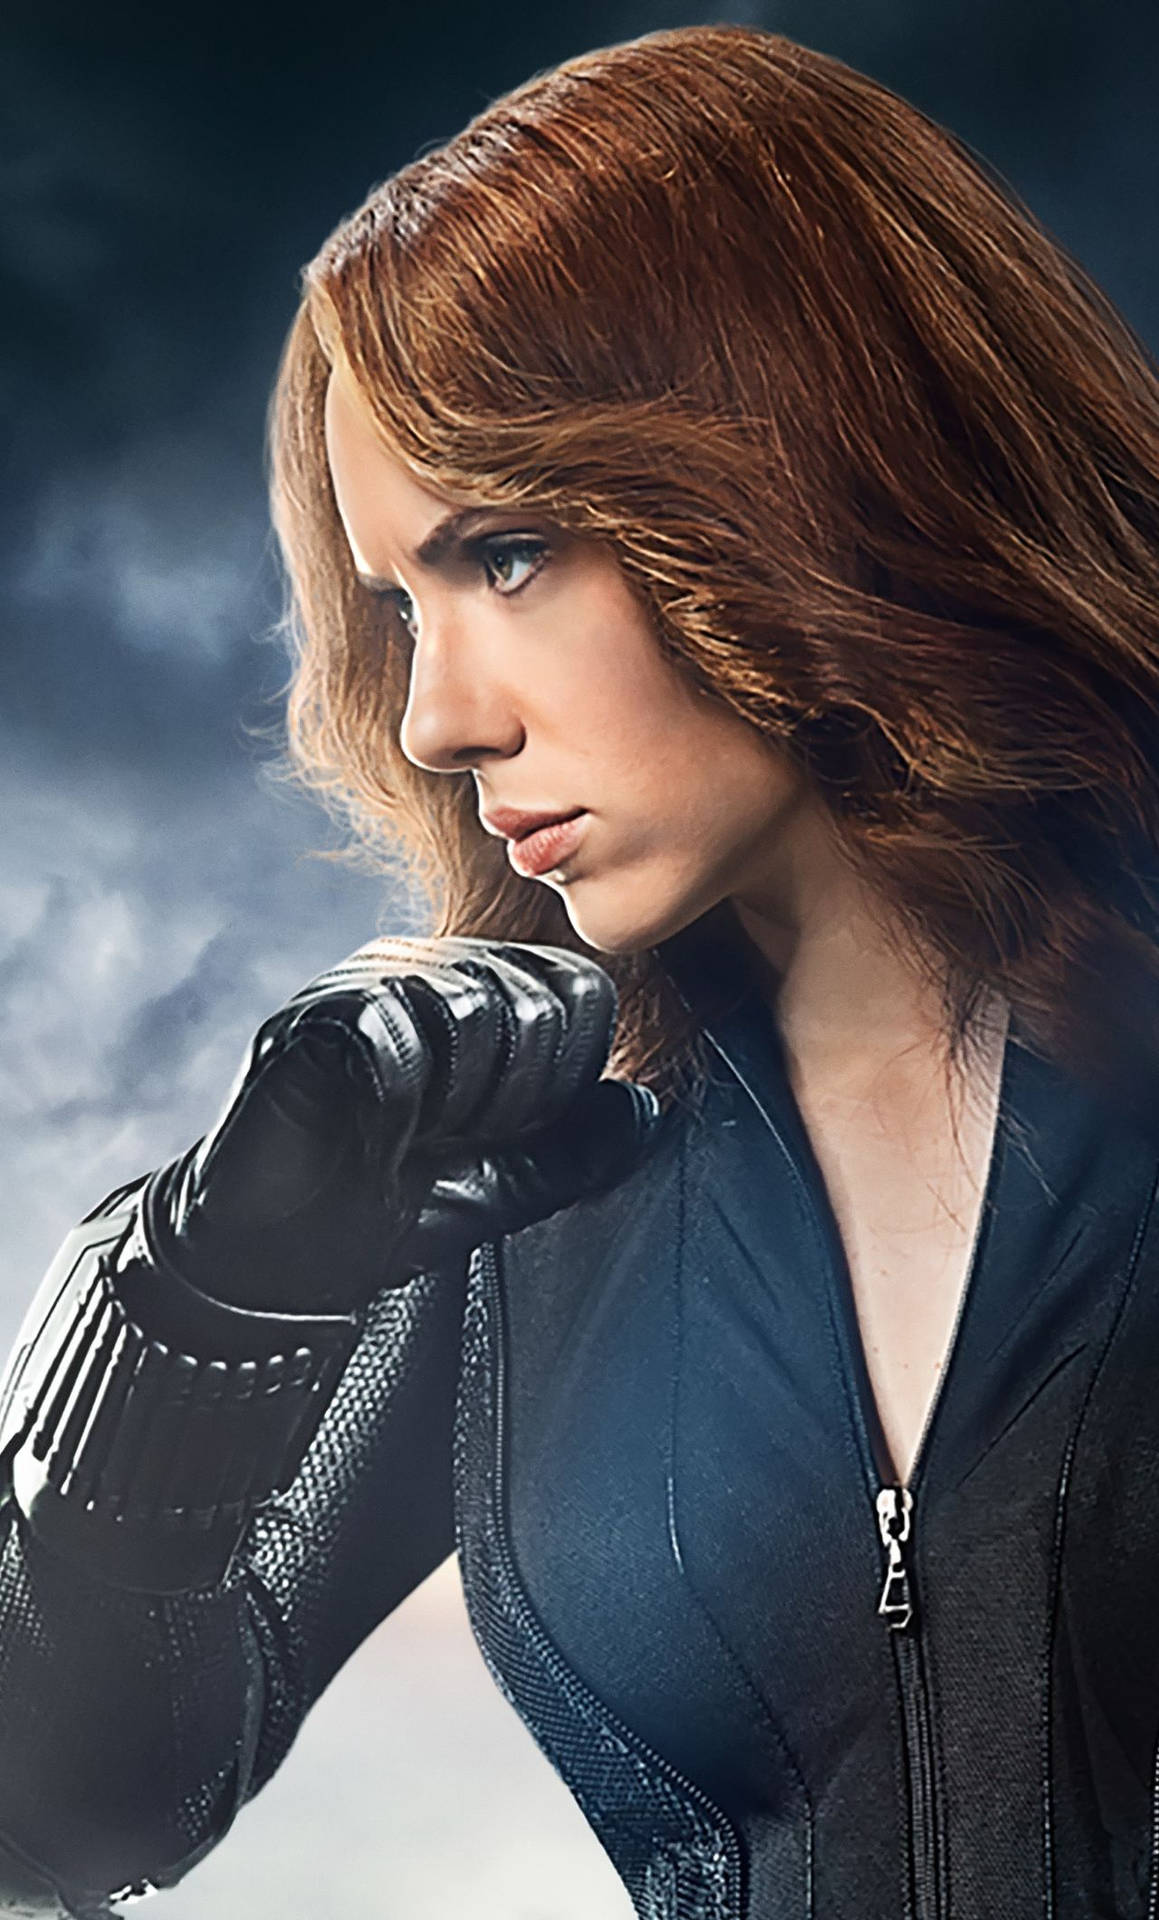 Scarlett Johanssos as Marvel's Black Widow. Wallpaper